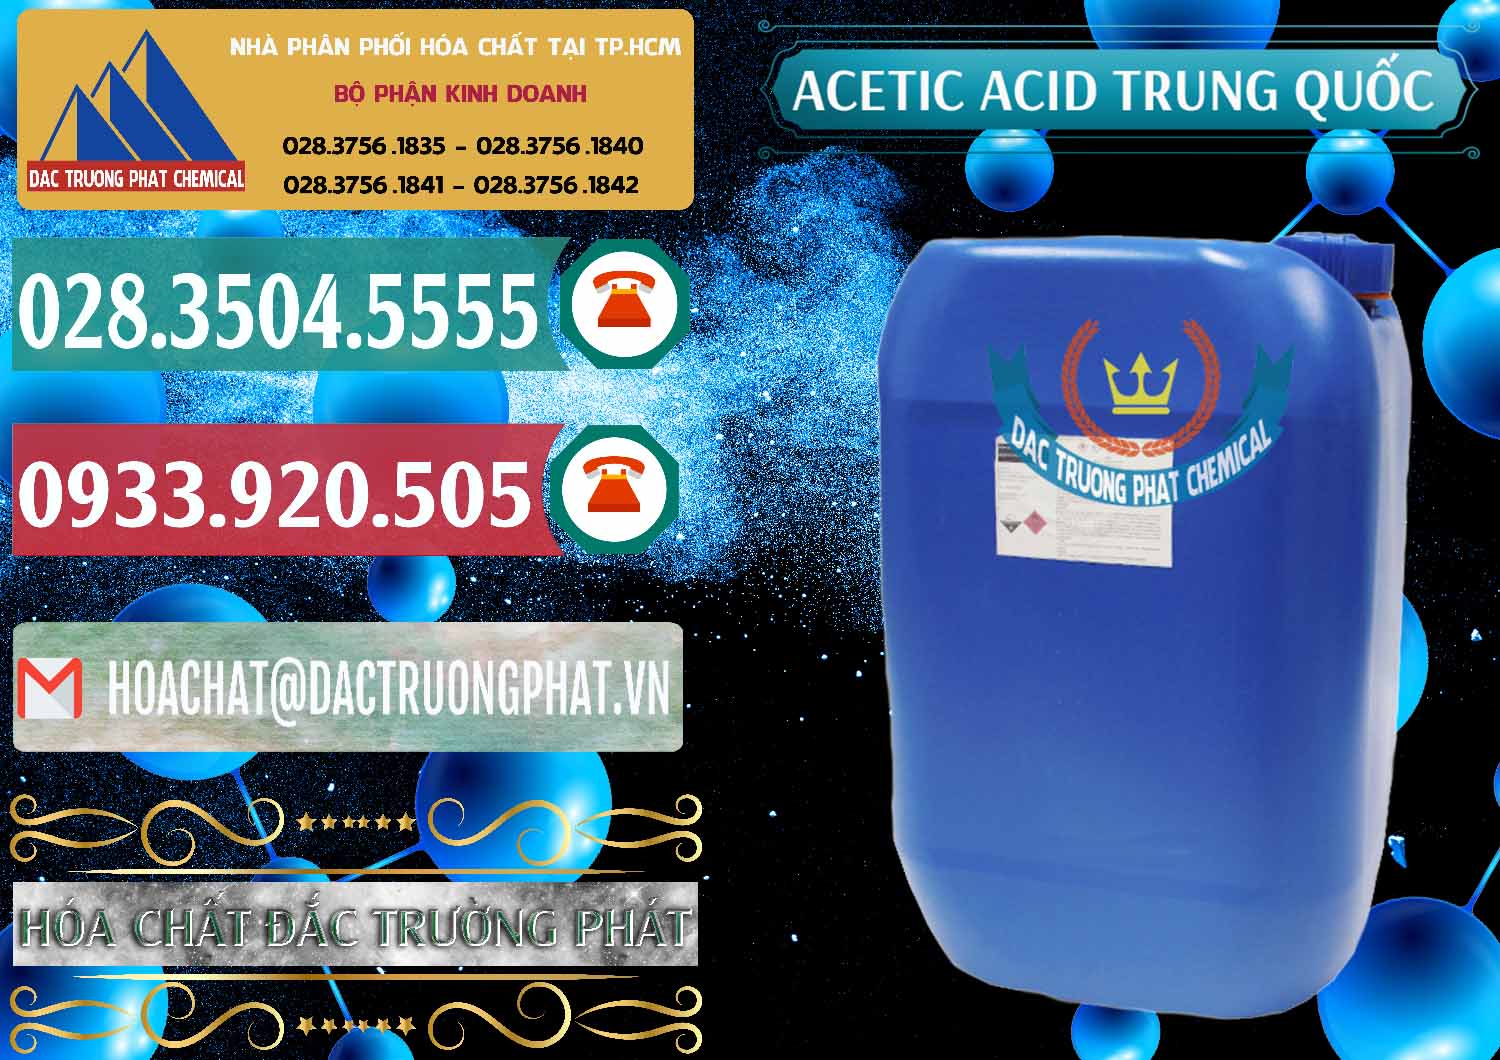 Công ty chuyên nhập khẩu _ bán Acetic Acid – Axit Acetic Trung Quốc China - 0358 - Cty nhập khẩu _ phân phối hóa chất tại TP.HCM - muabanhoachat.vn